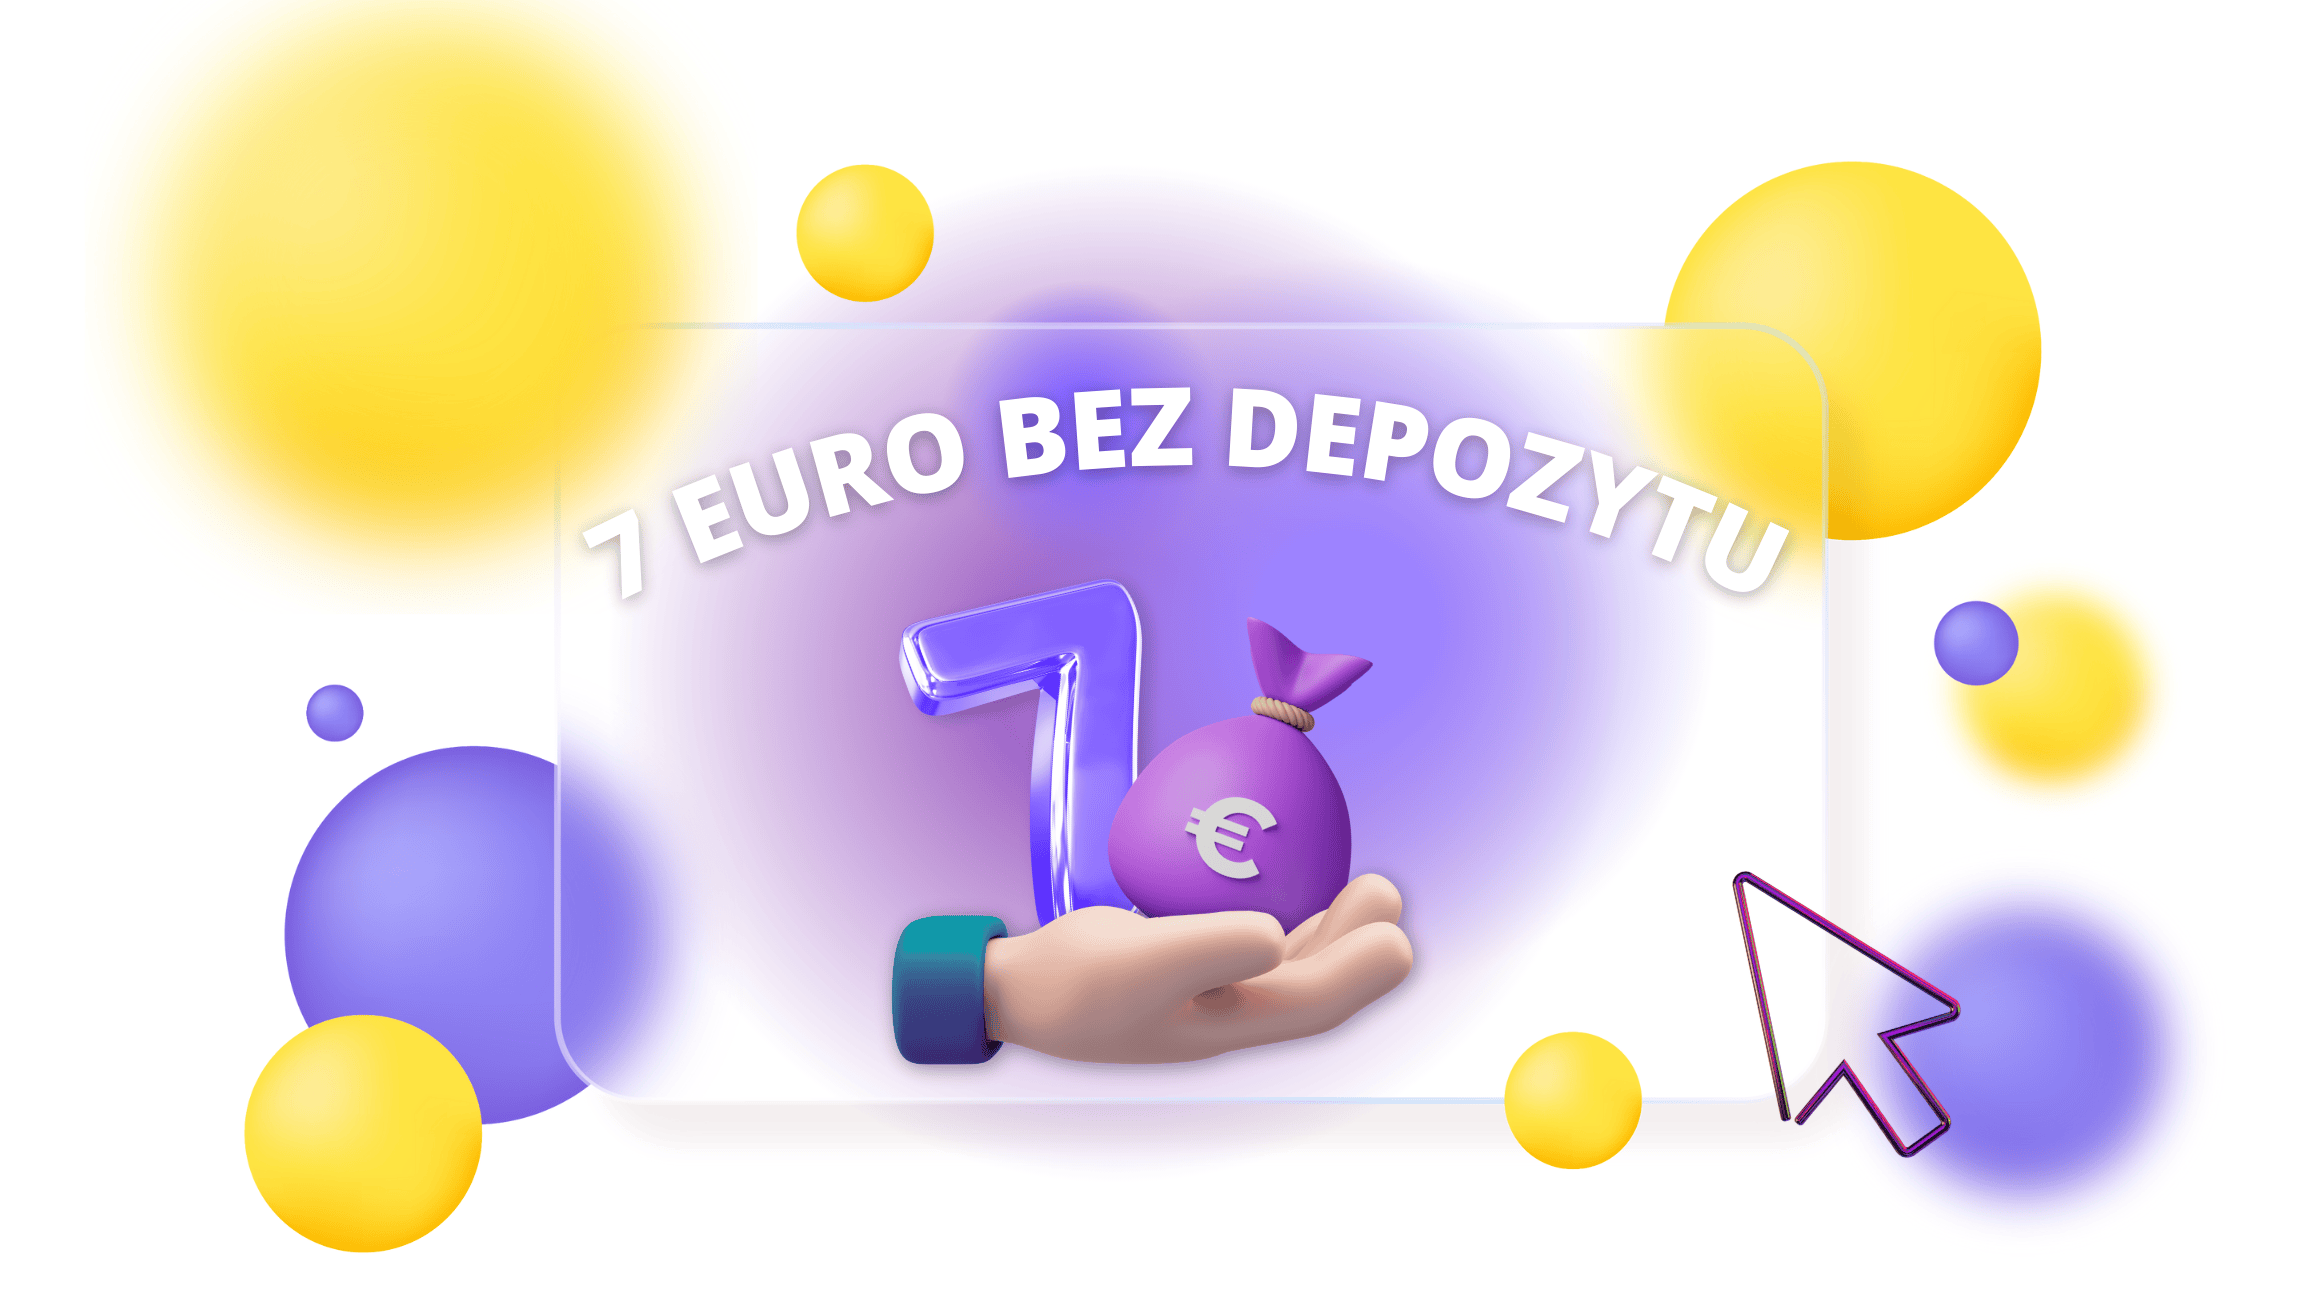 Casino 7 euro bez depozytu za samą rejestrację Nowekasyna-pl.com